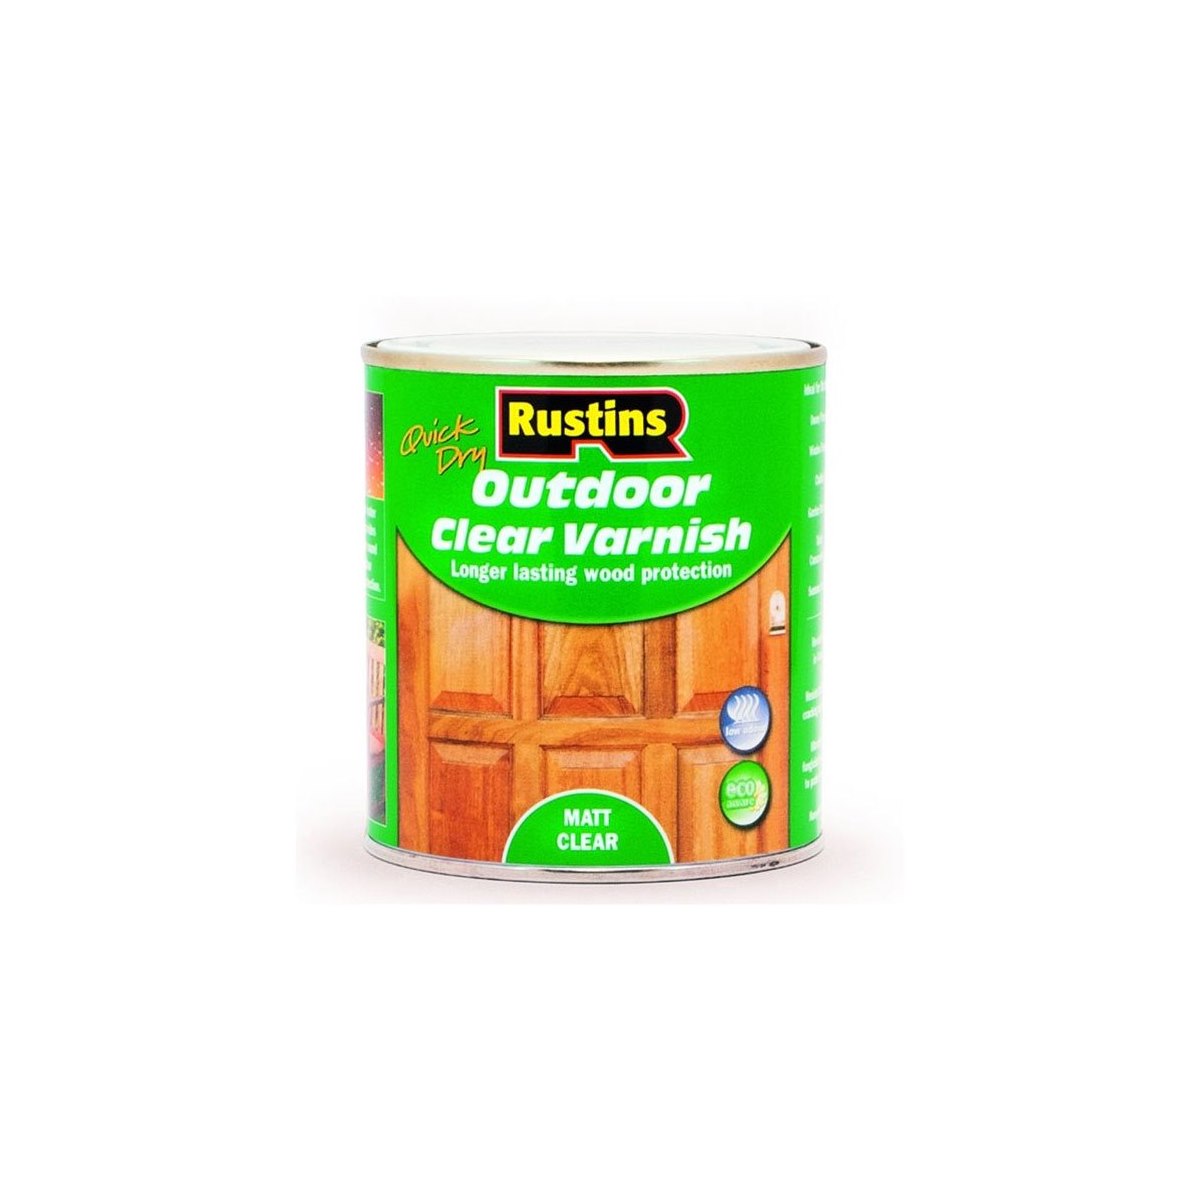 Rustins Quick Dry Outdoor Clear Varnish Matt 500ml